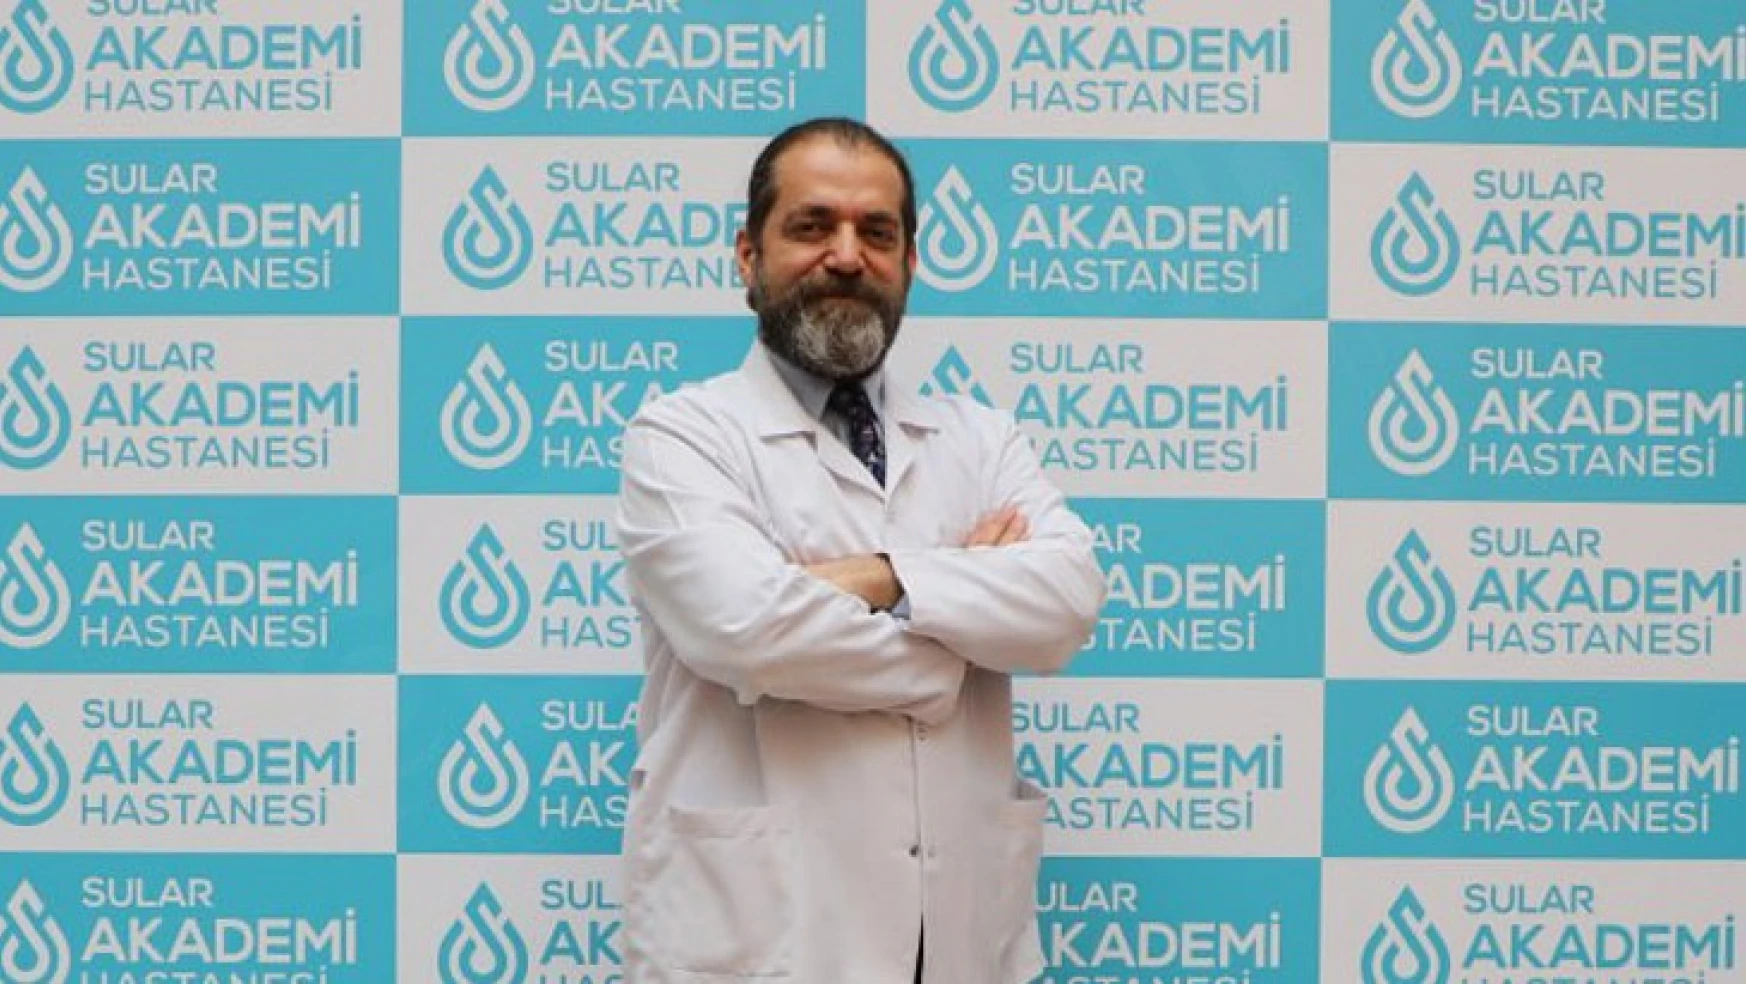 Özel Sular Akademi Hastanesi'nde 2 Bin 500 yıllık Türk geleneği